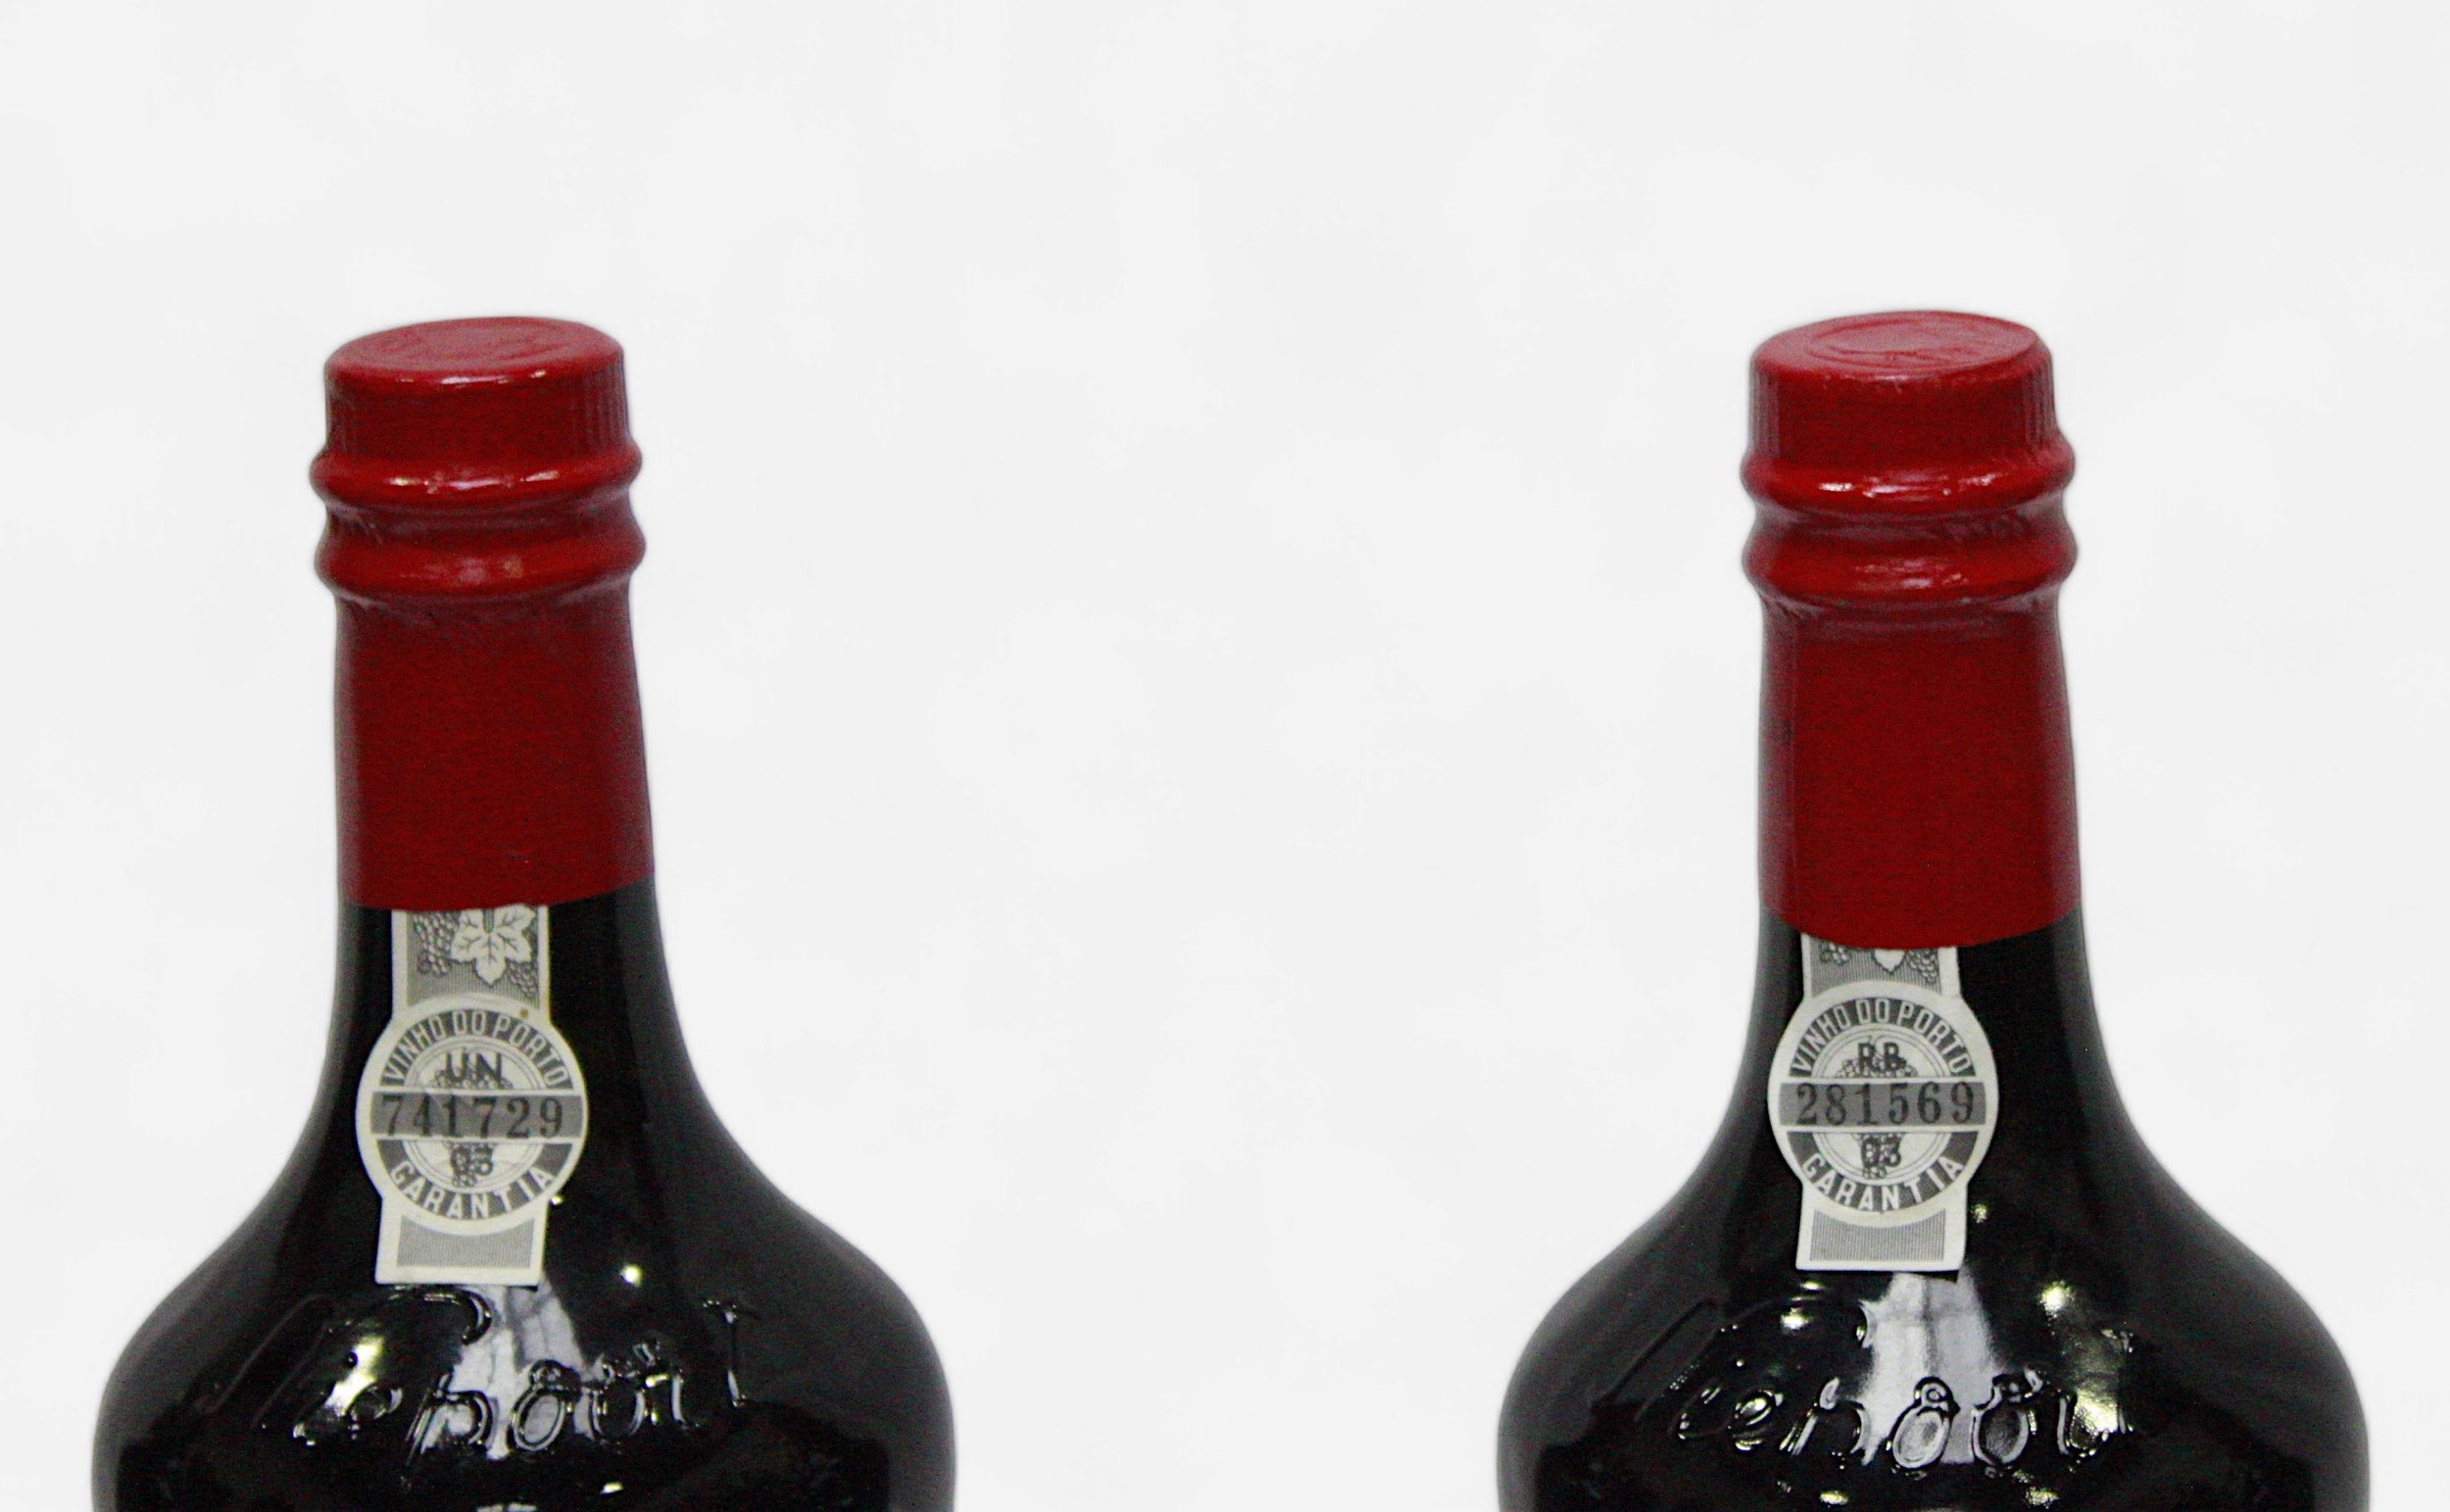 Four 750ml bottles of Porto Nieport Ruby port, Trafalgar 200 commemorative bottles, all unopened - Bild 2 aus 2